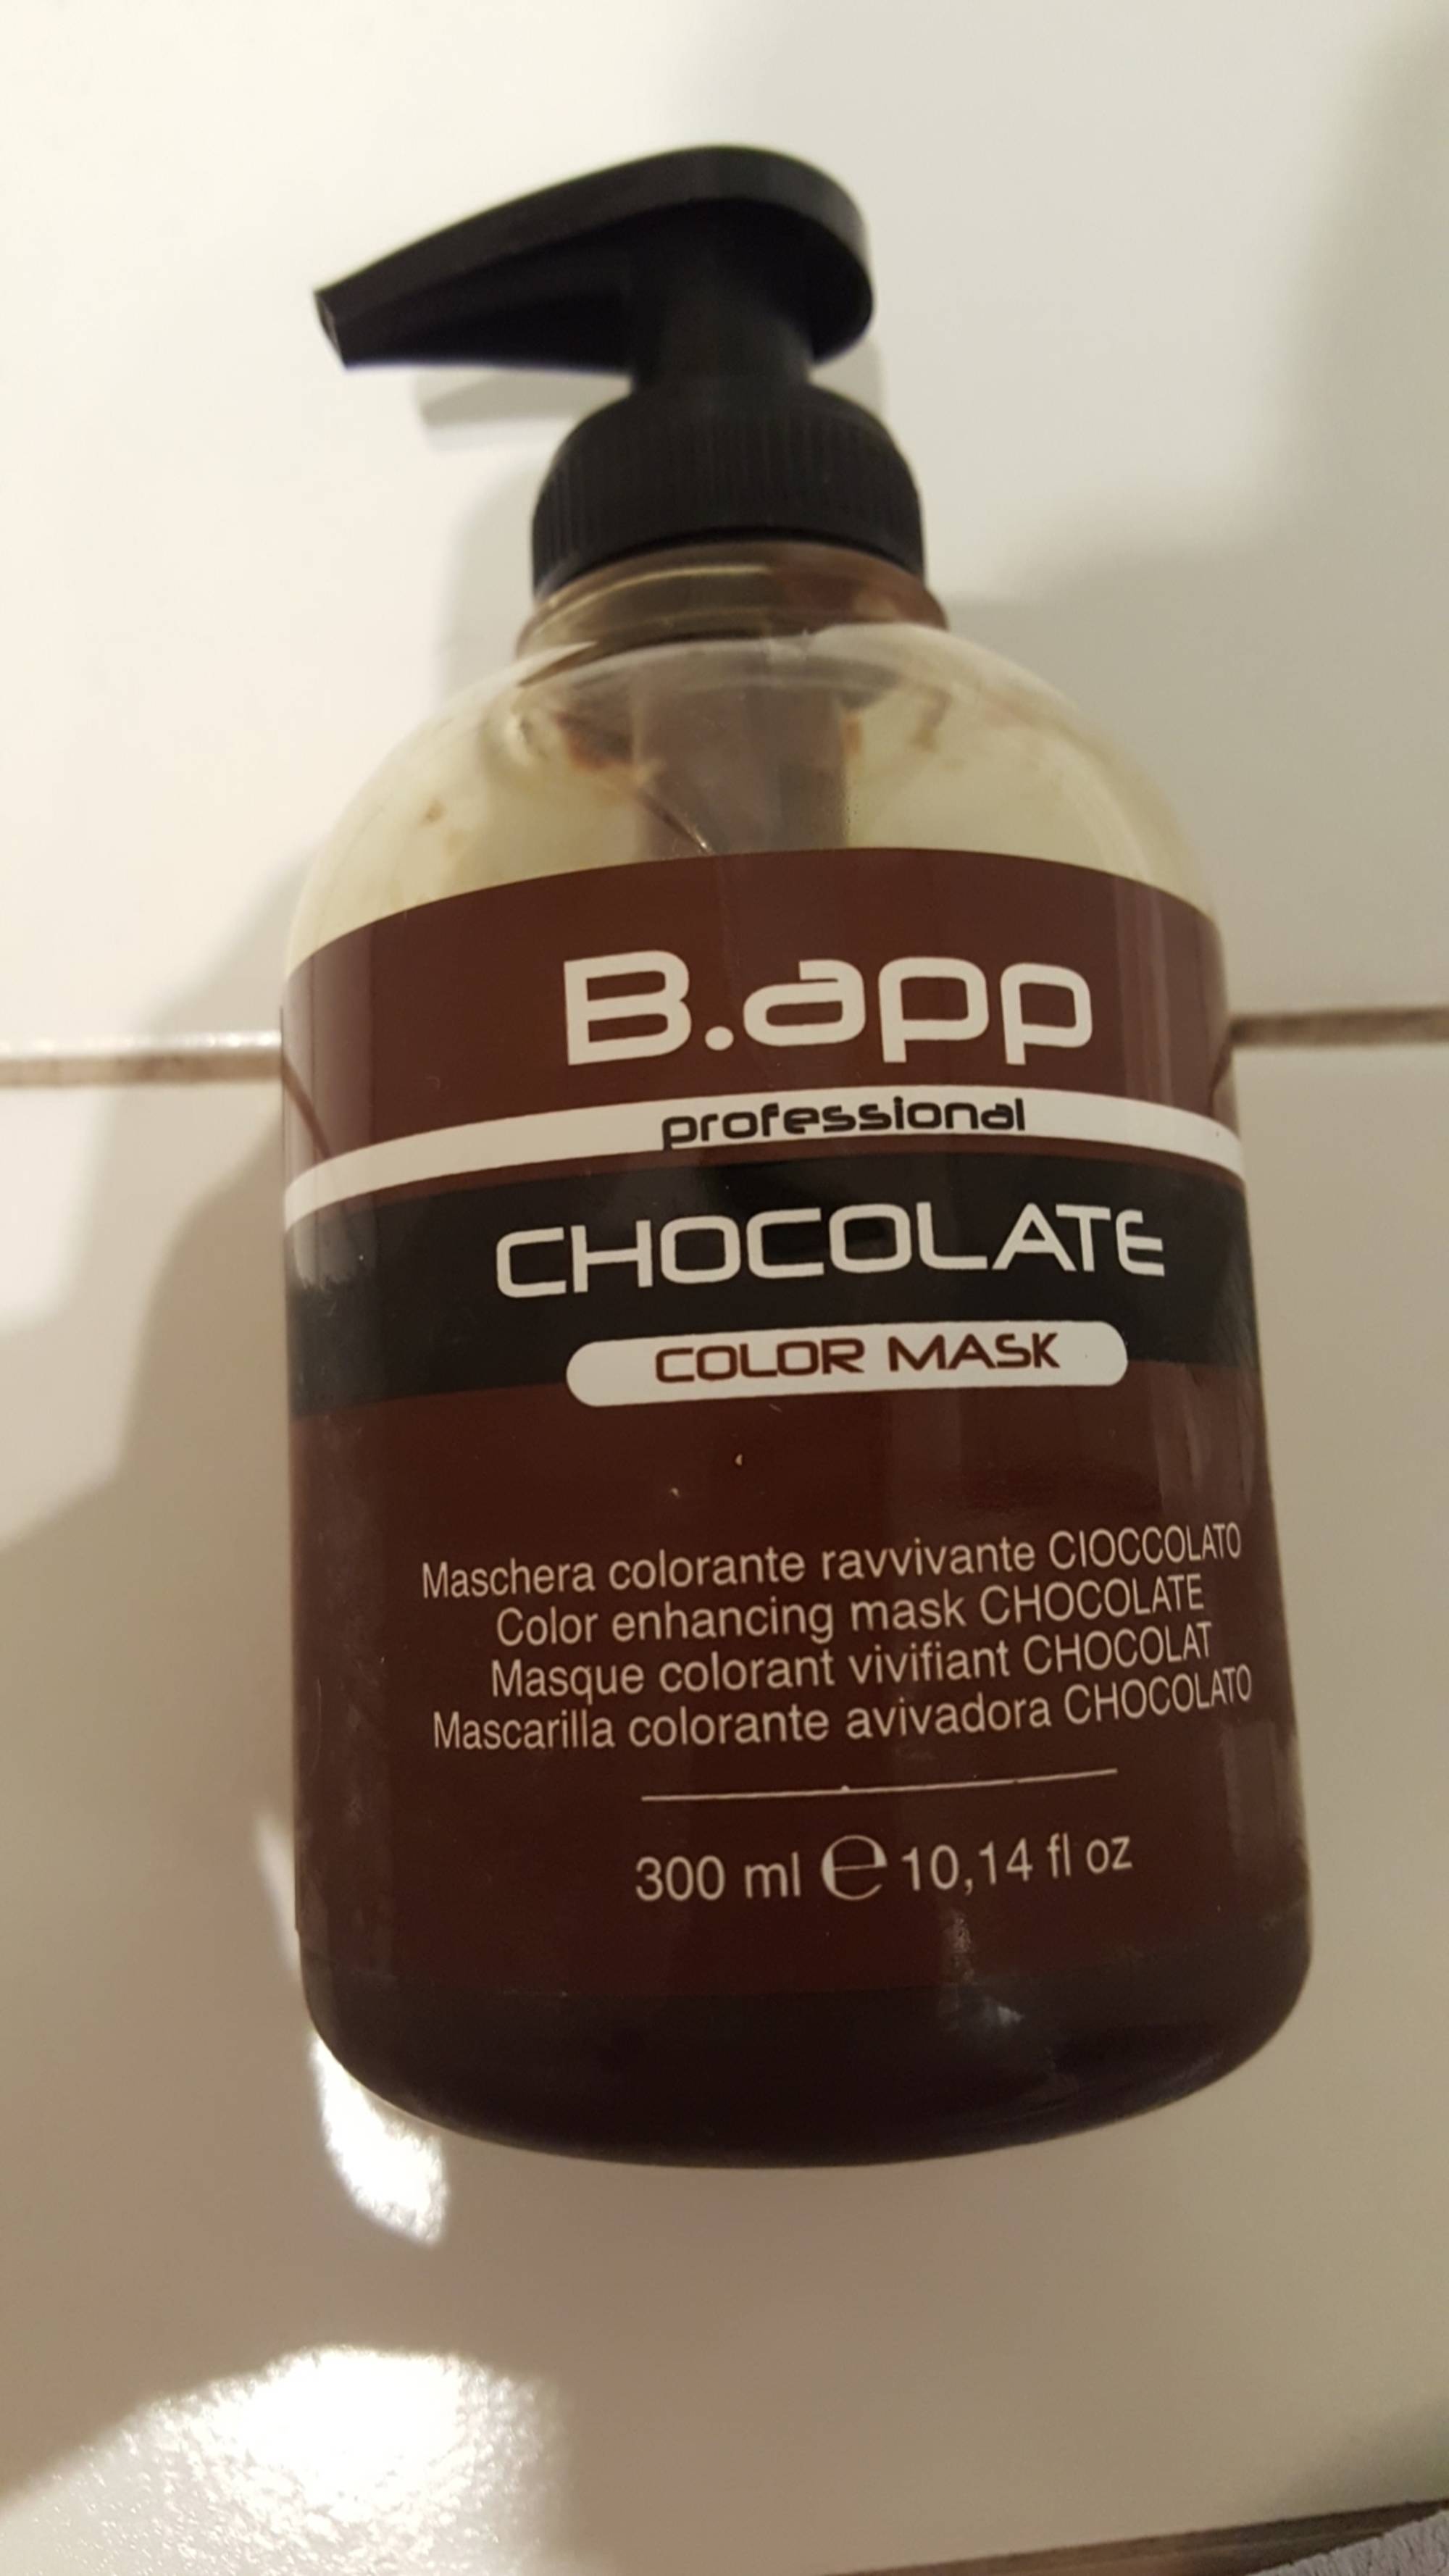 B.APP - Masque colorant vivifiant chocolat